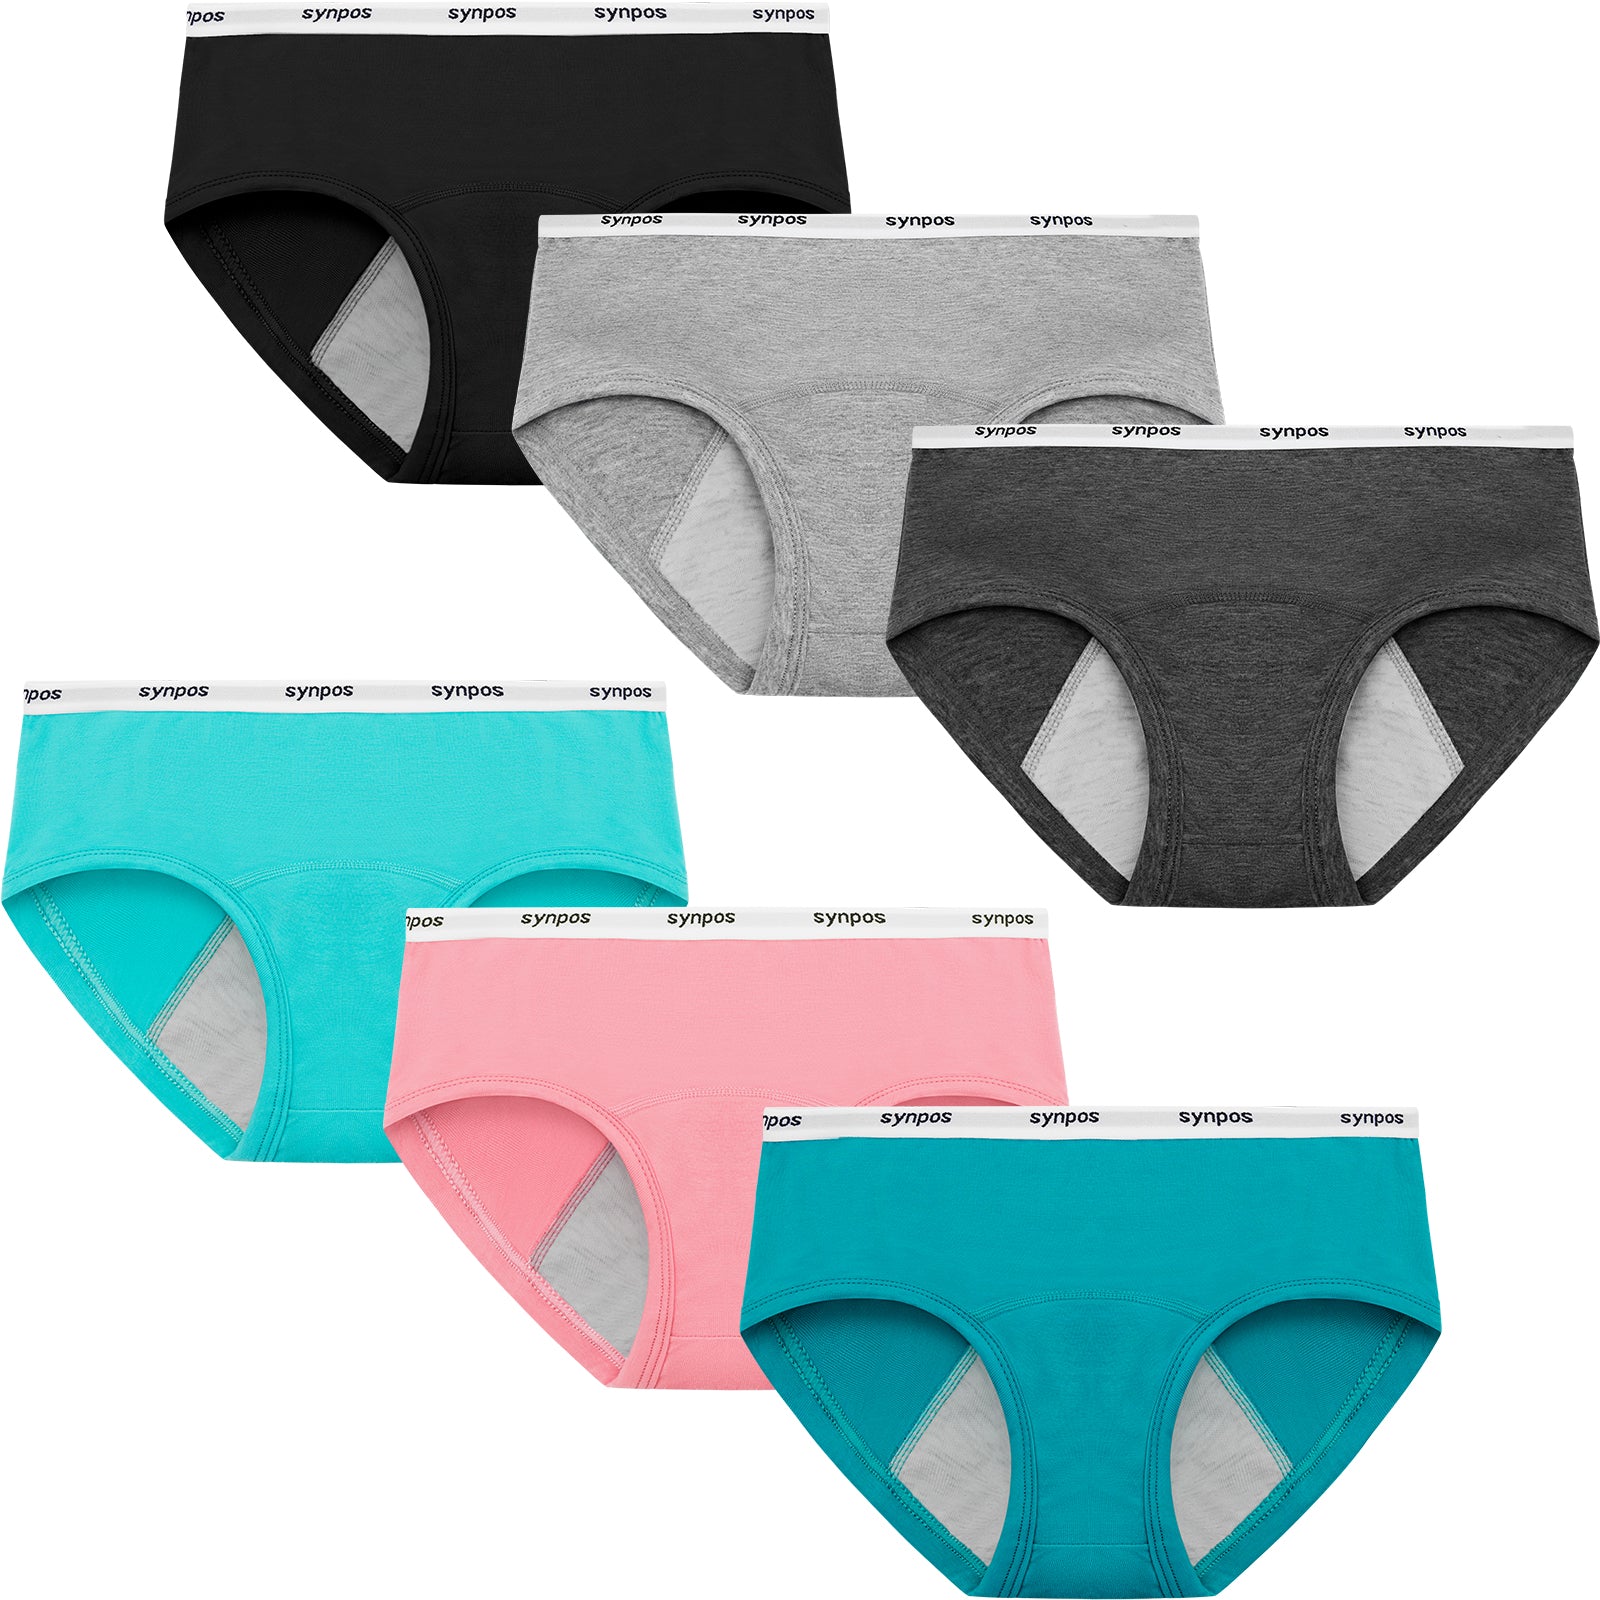 SYNPOS Girls Underwear 100% Cotton Underwear for Girls